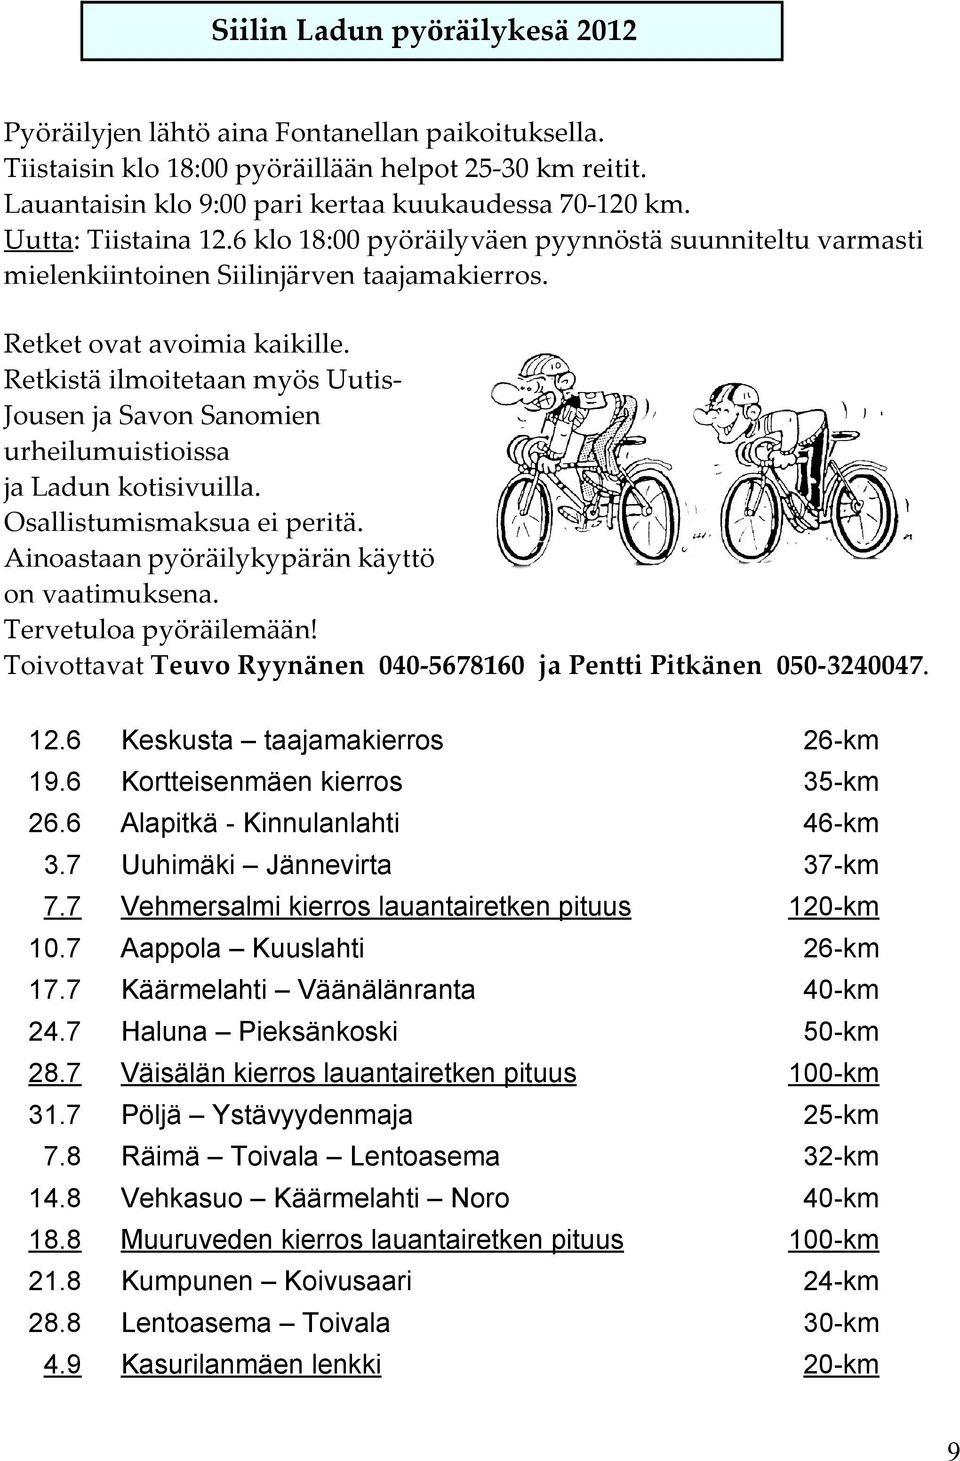 Retkistä ilmoitetaan myös Uutis- Jousen ja Savon Sanomien urheilumuistioissa ja Ladun kotisivuilla. Osallistumismaksua ei peritä. Ainoastaan pyöräilykypärän käyttö on vaatimuksena.